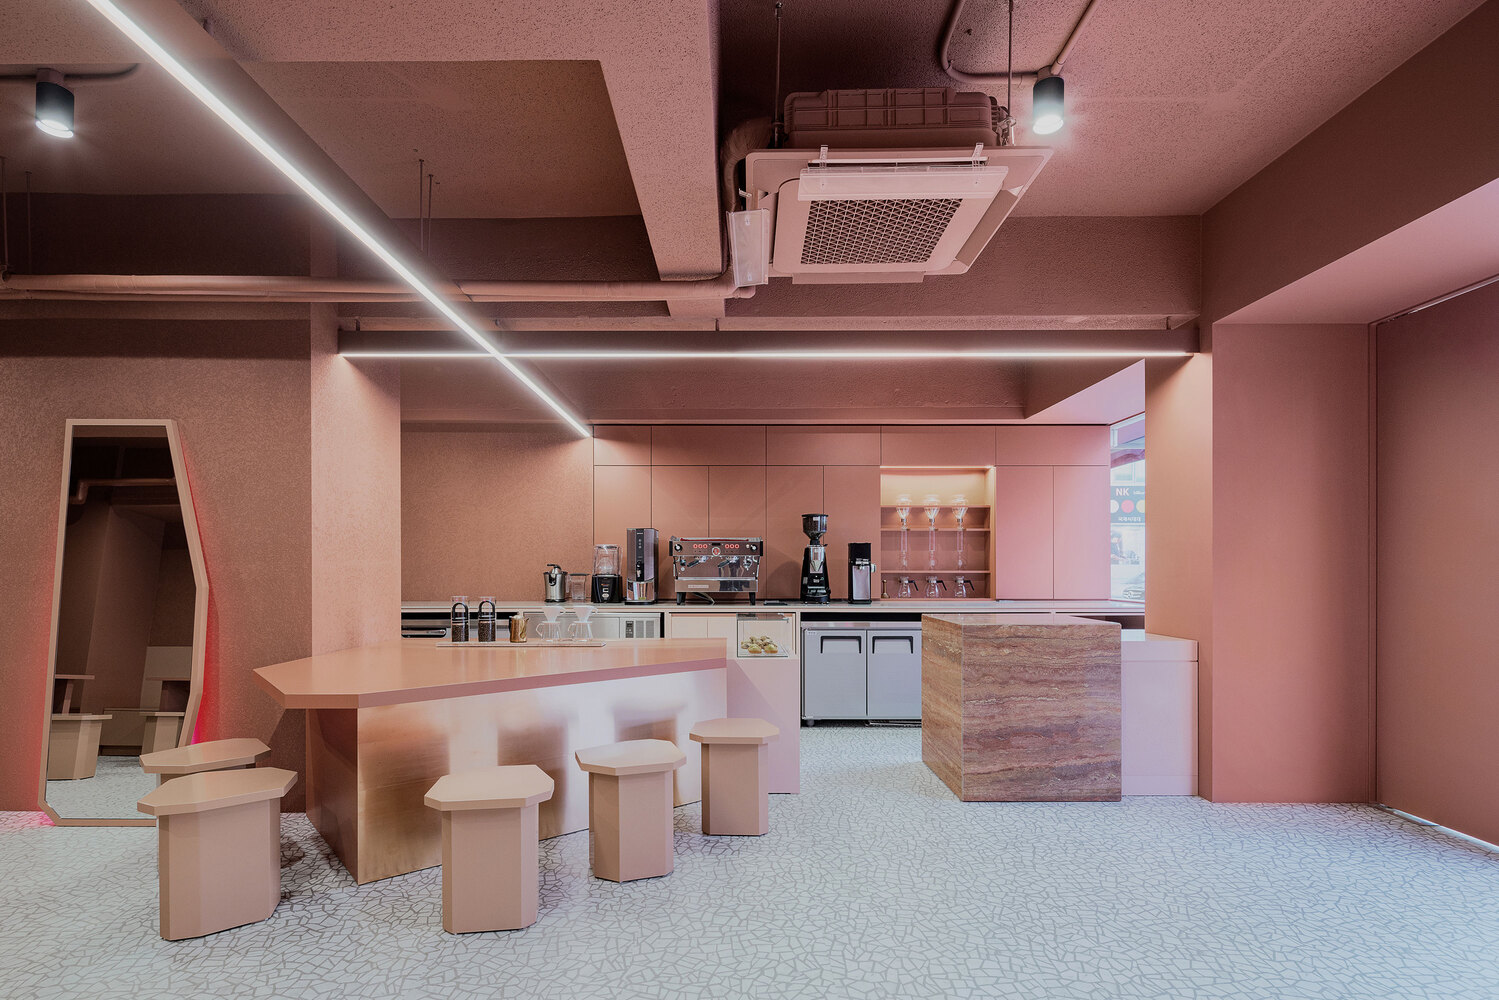 Pink Cafe station  Pink cafe, Pink, Room makeover inspiration